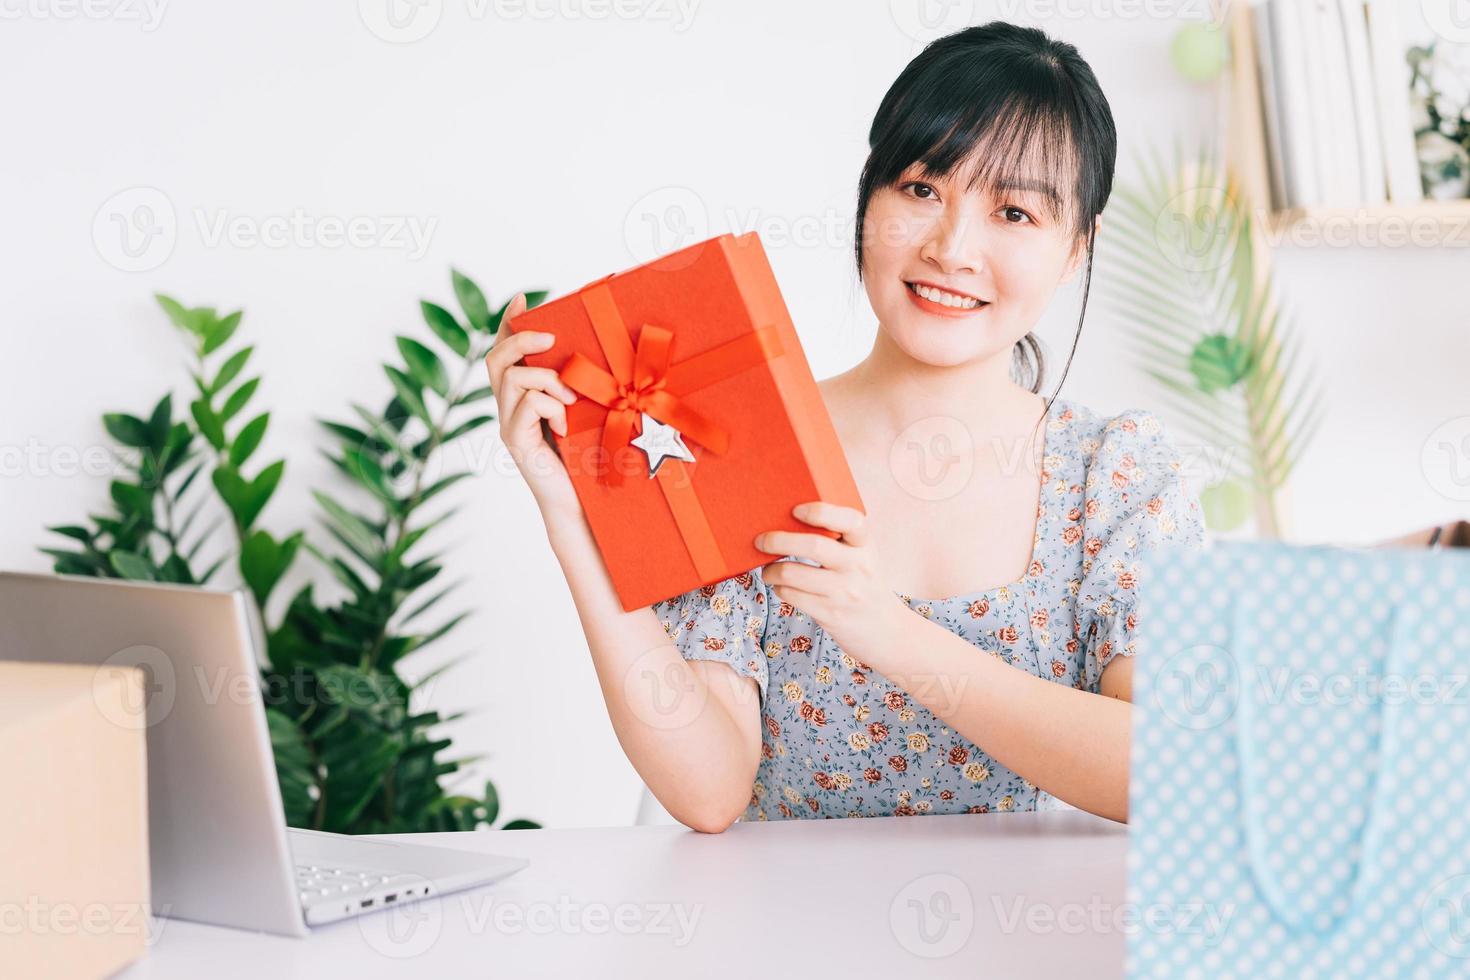 jonge Aziatische vrouw livestream om cadeaus te geven aan het publiek dat haar stream op sociale netwerkplatforms bekijkt foto